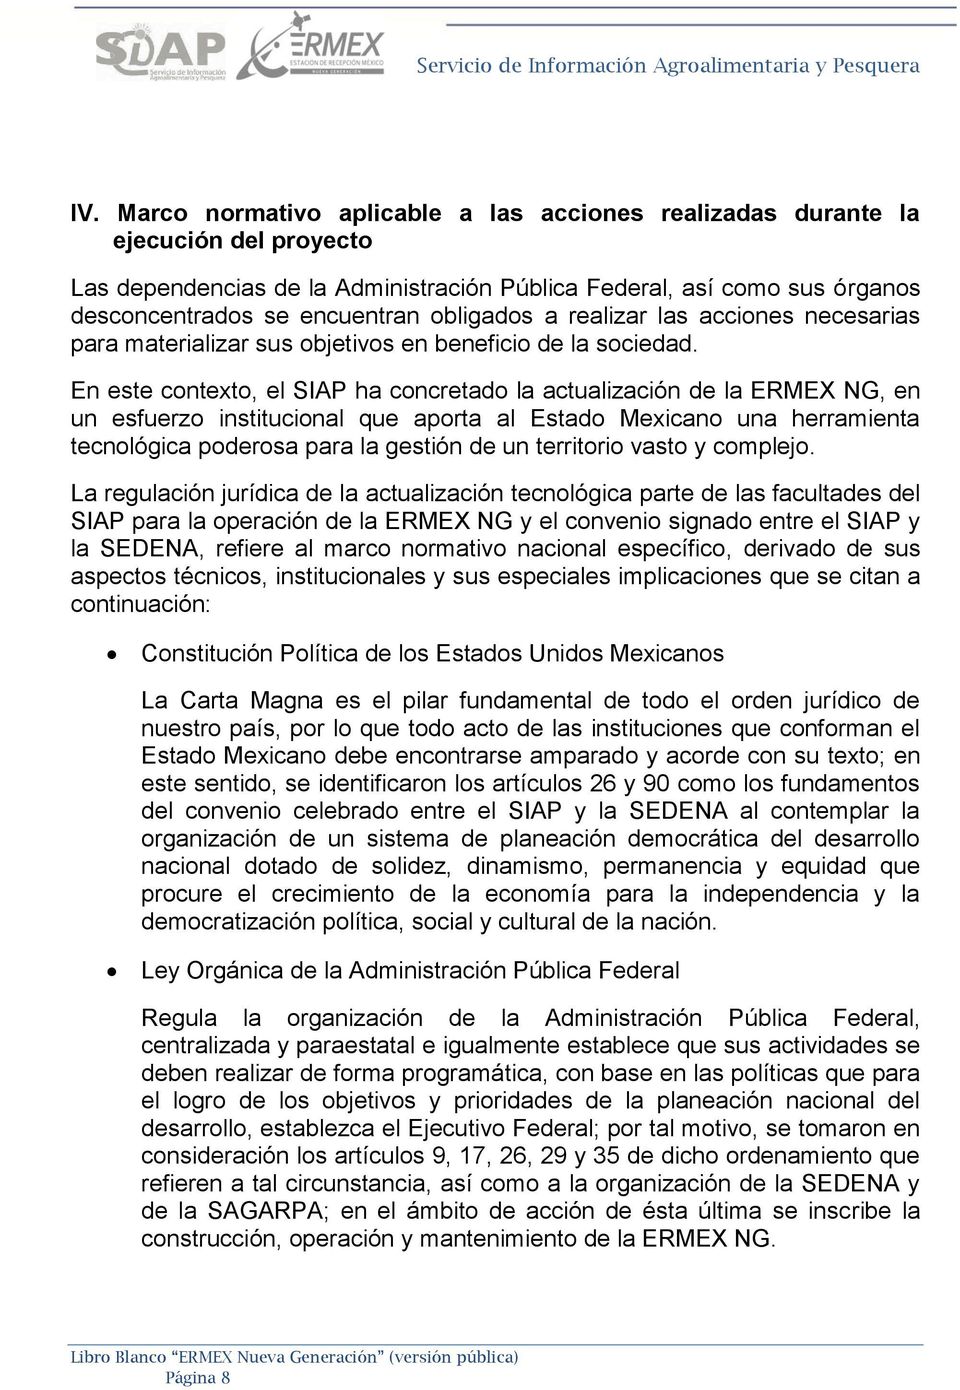 En este contexto, el SIAP ha concretado la actualización de la ERMEX NG, en un esfuerzo institucional que aporta al Estado Mexicano una herramienta tecnológica poderosa para la gestión de un